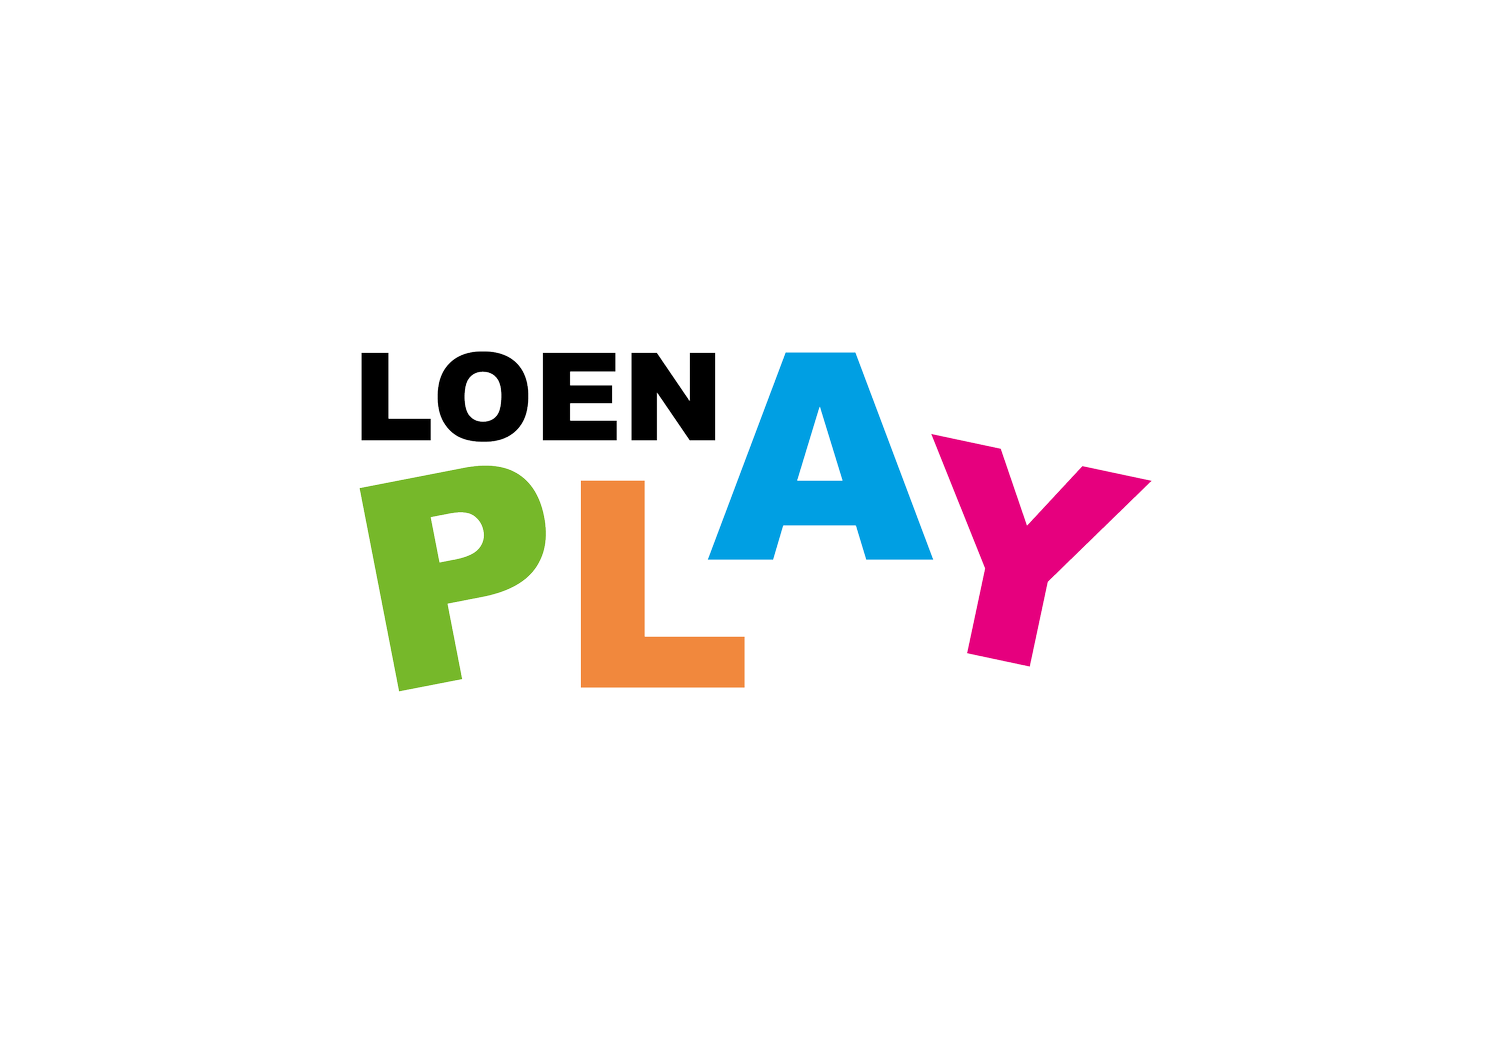 Loen Play